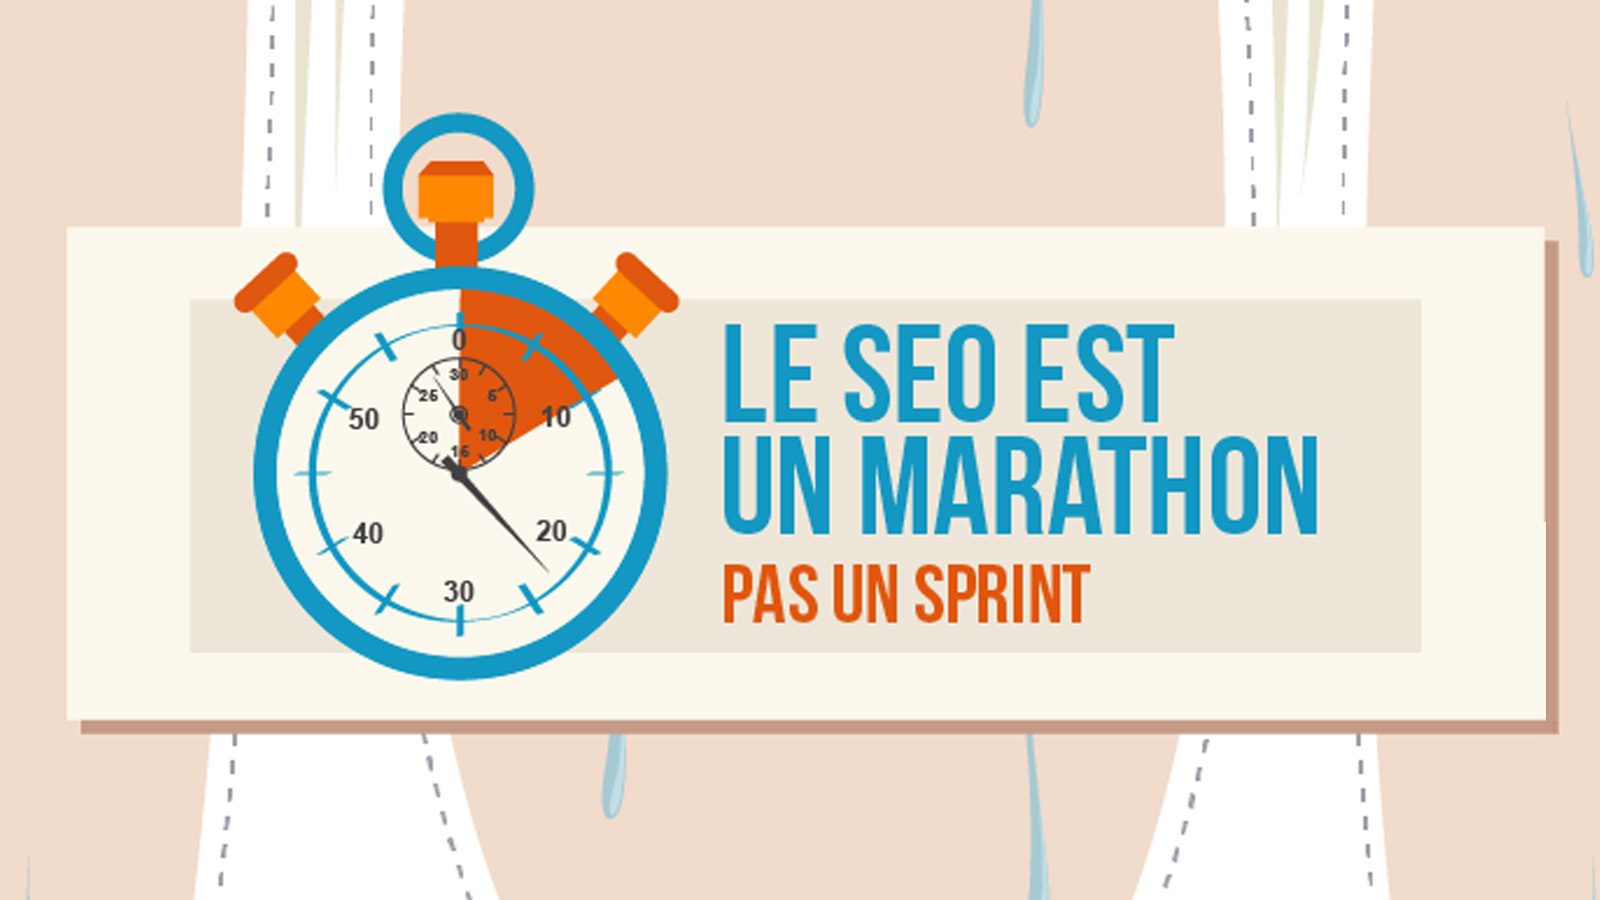 [Infographie] Le SEO c’est comme le marathon, il faut être endurant